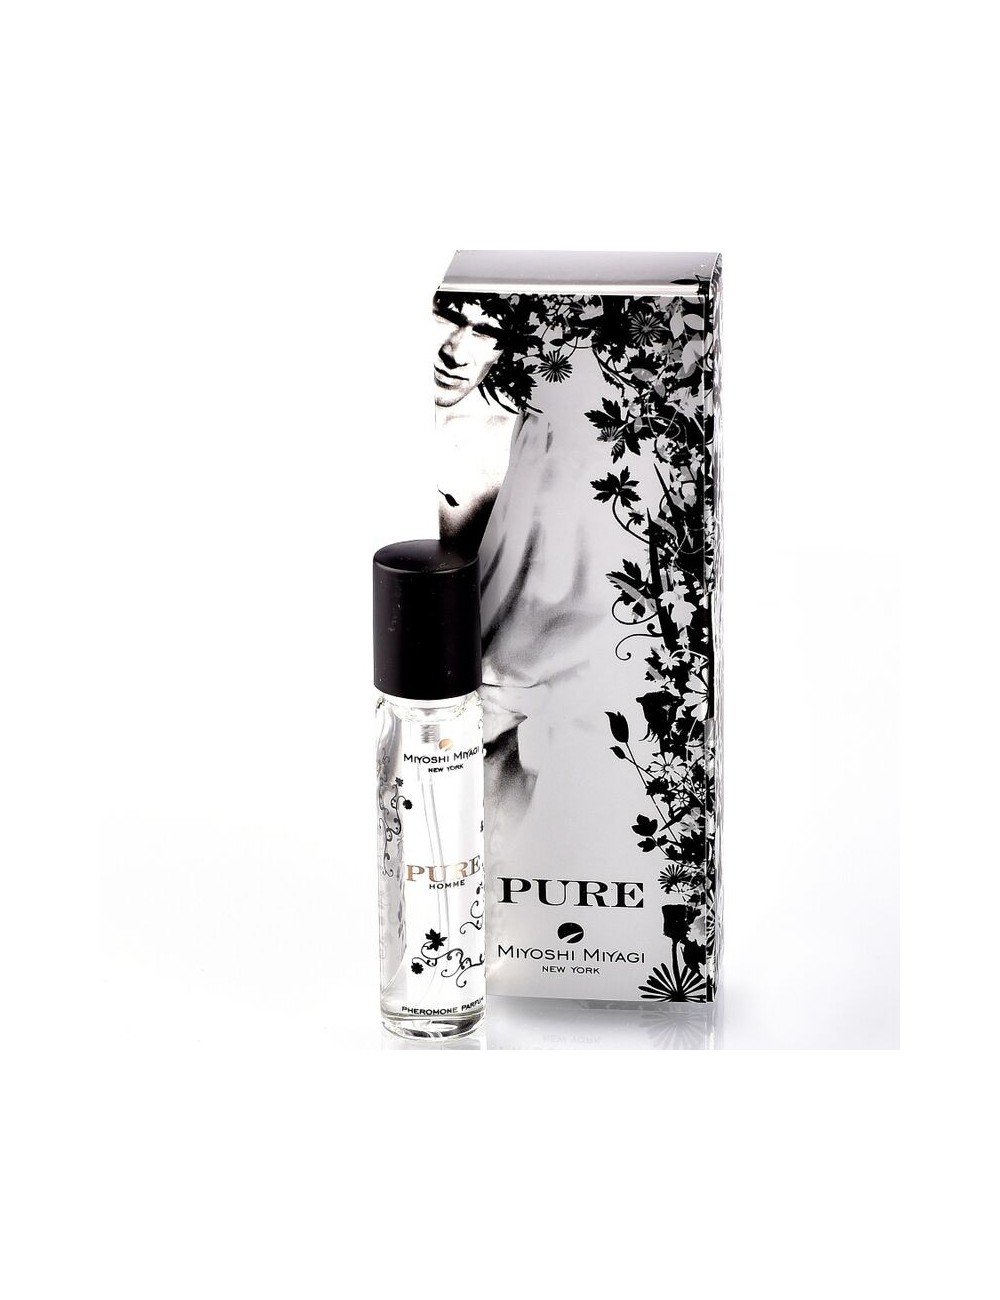 HIROSHI MIYAGI PURE PHROMONES PARFUM HOMME 15 ML - Parfum - Miyoshi Miyagi